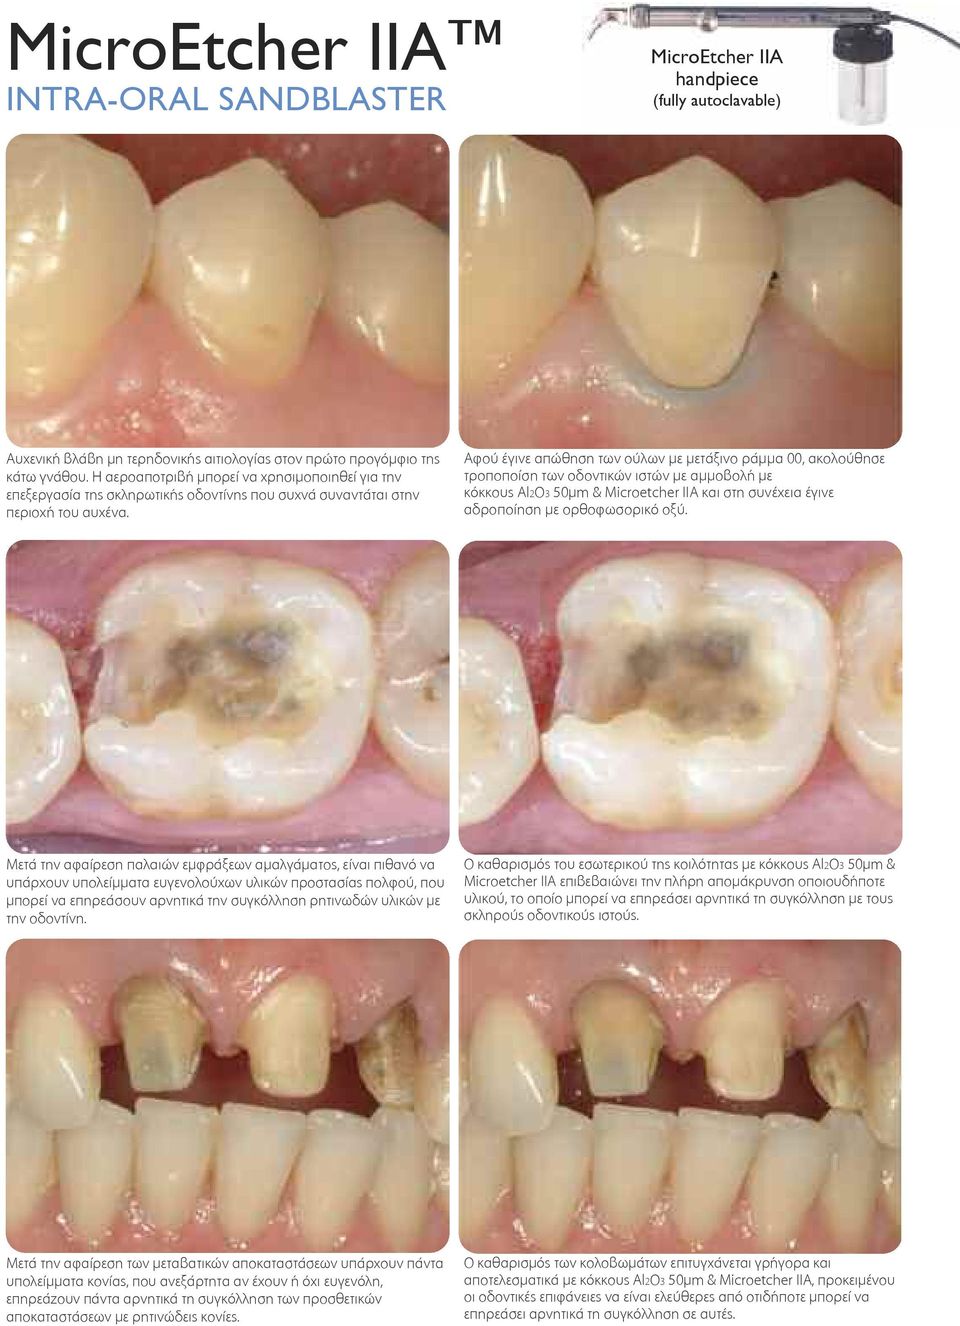 Αφού έγινε απώθηση των ούλων με μετάξινο ράμμα 00, ακολούθησε τροποποίση των οδοντικών ιστών με αμμοβολή με κόκκους Al2O3 50μm & Microetcher IIA και στη συνέχεια έγινε αδροποίηση με ορθοφωσορικό οξύ.